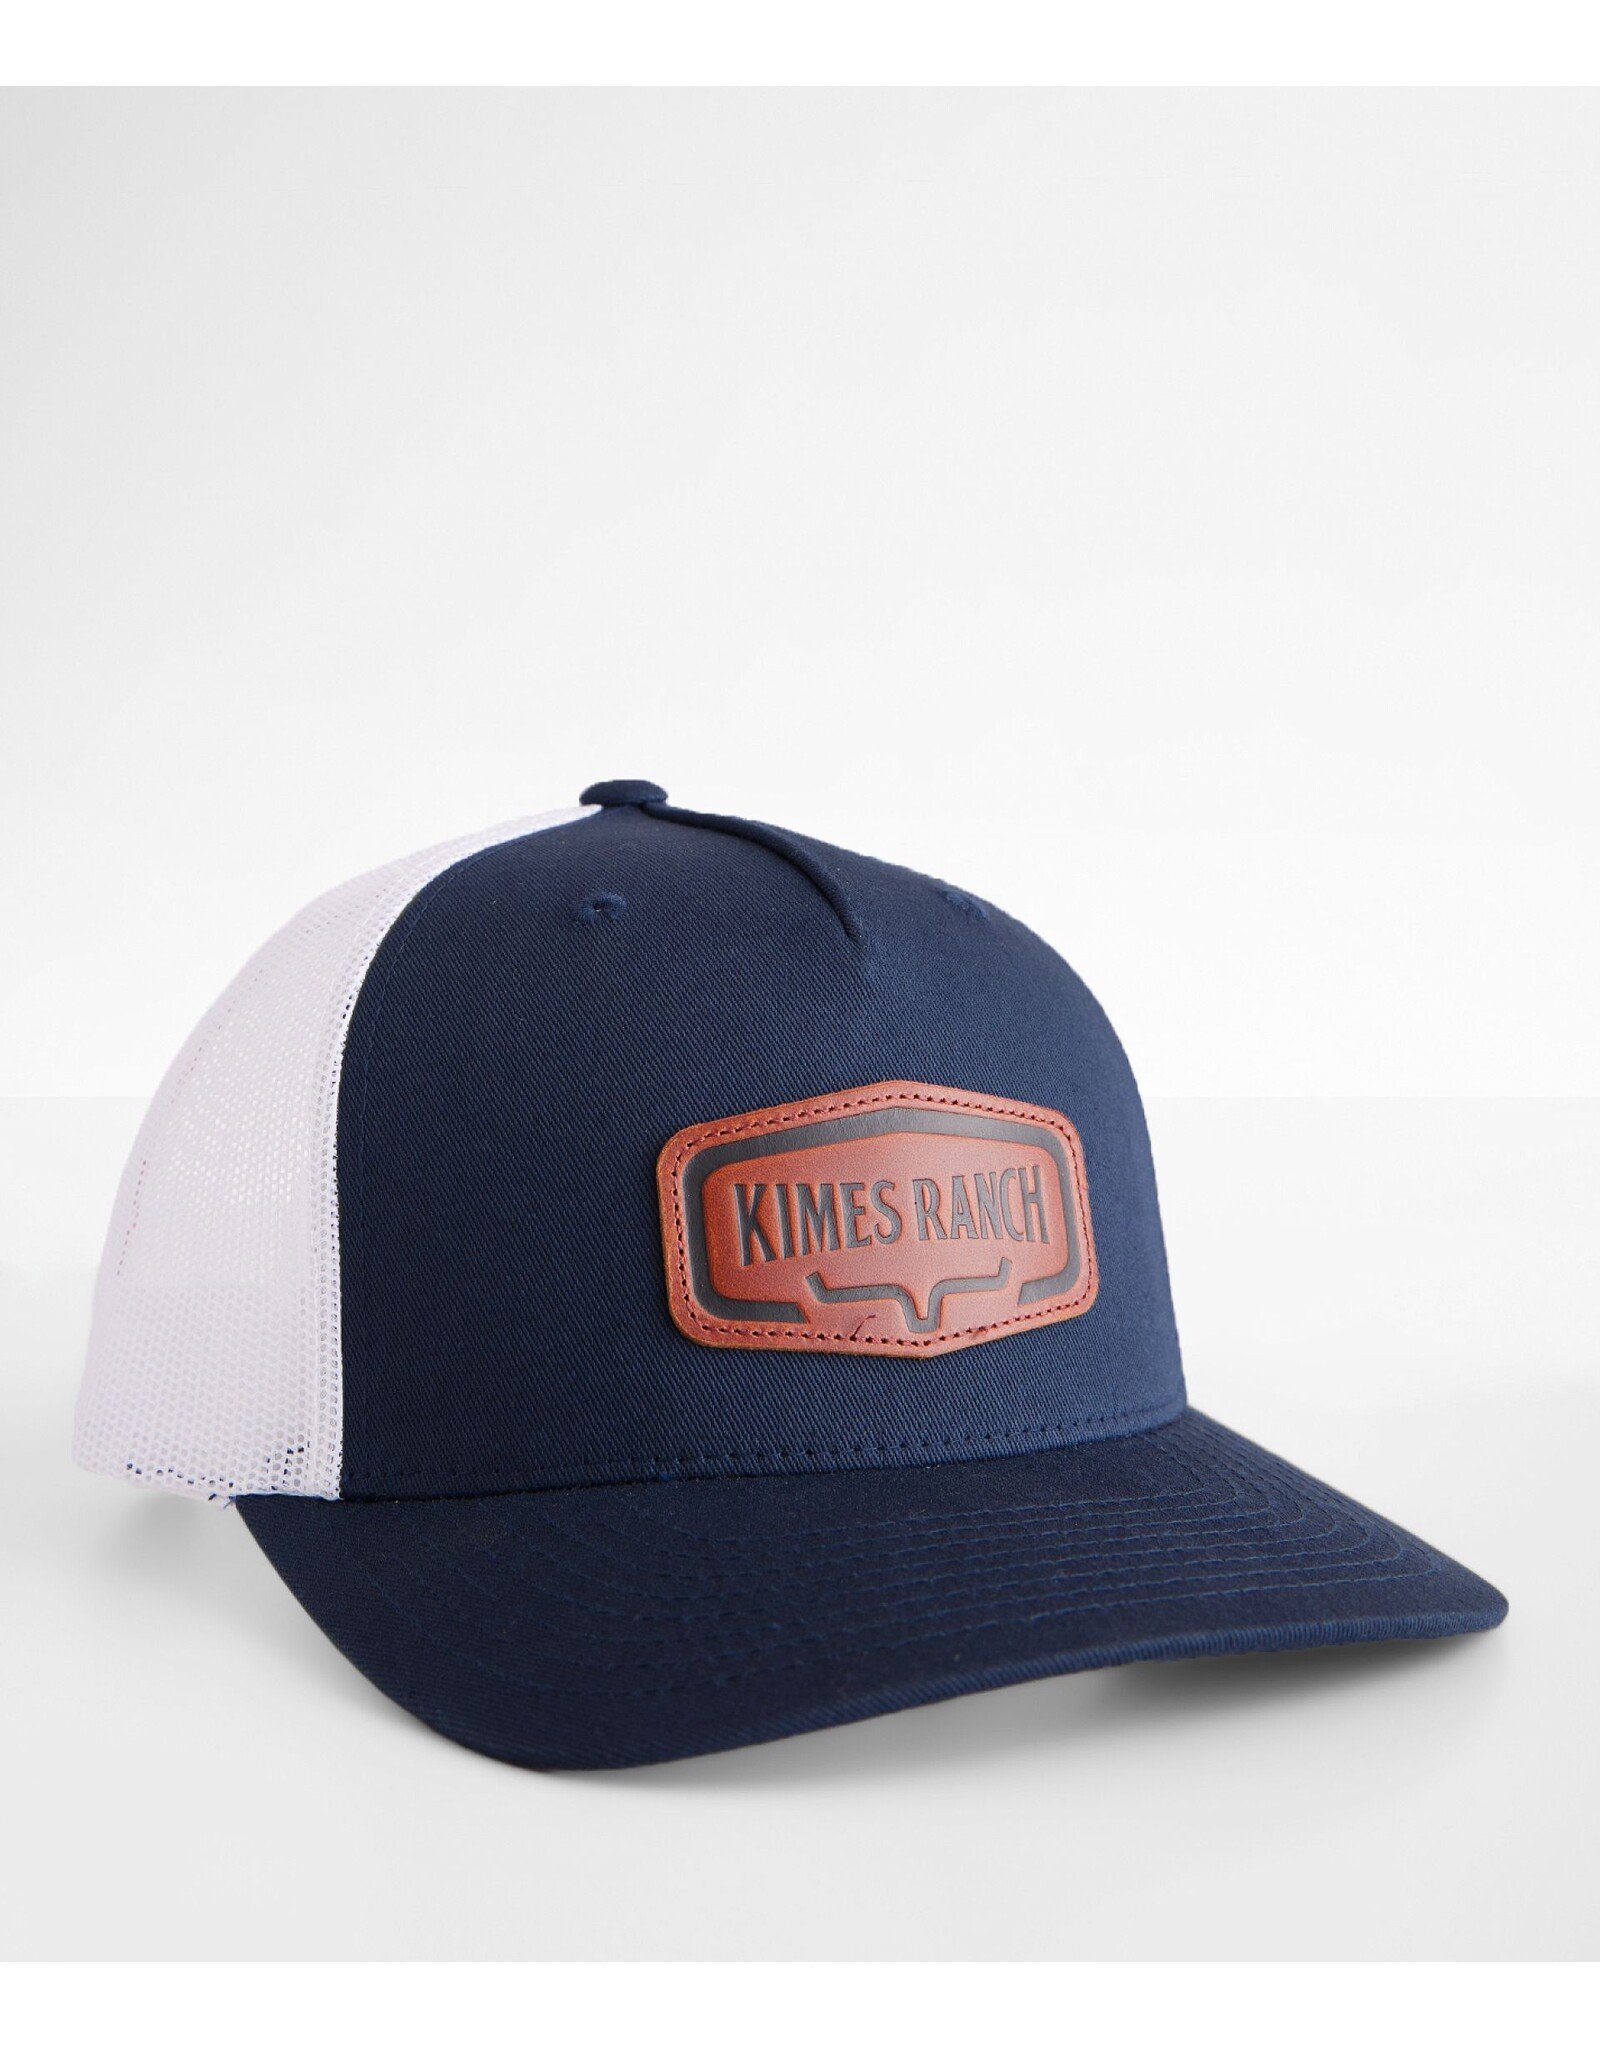 Kimes Ranch Kimes Ranch Dodson Premier Hat Navy